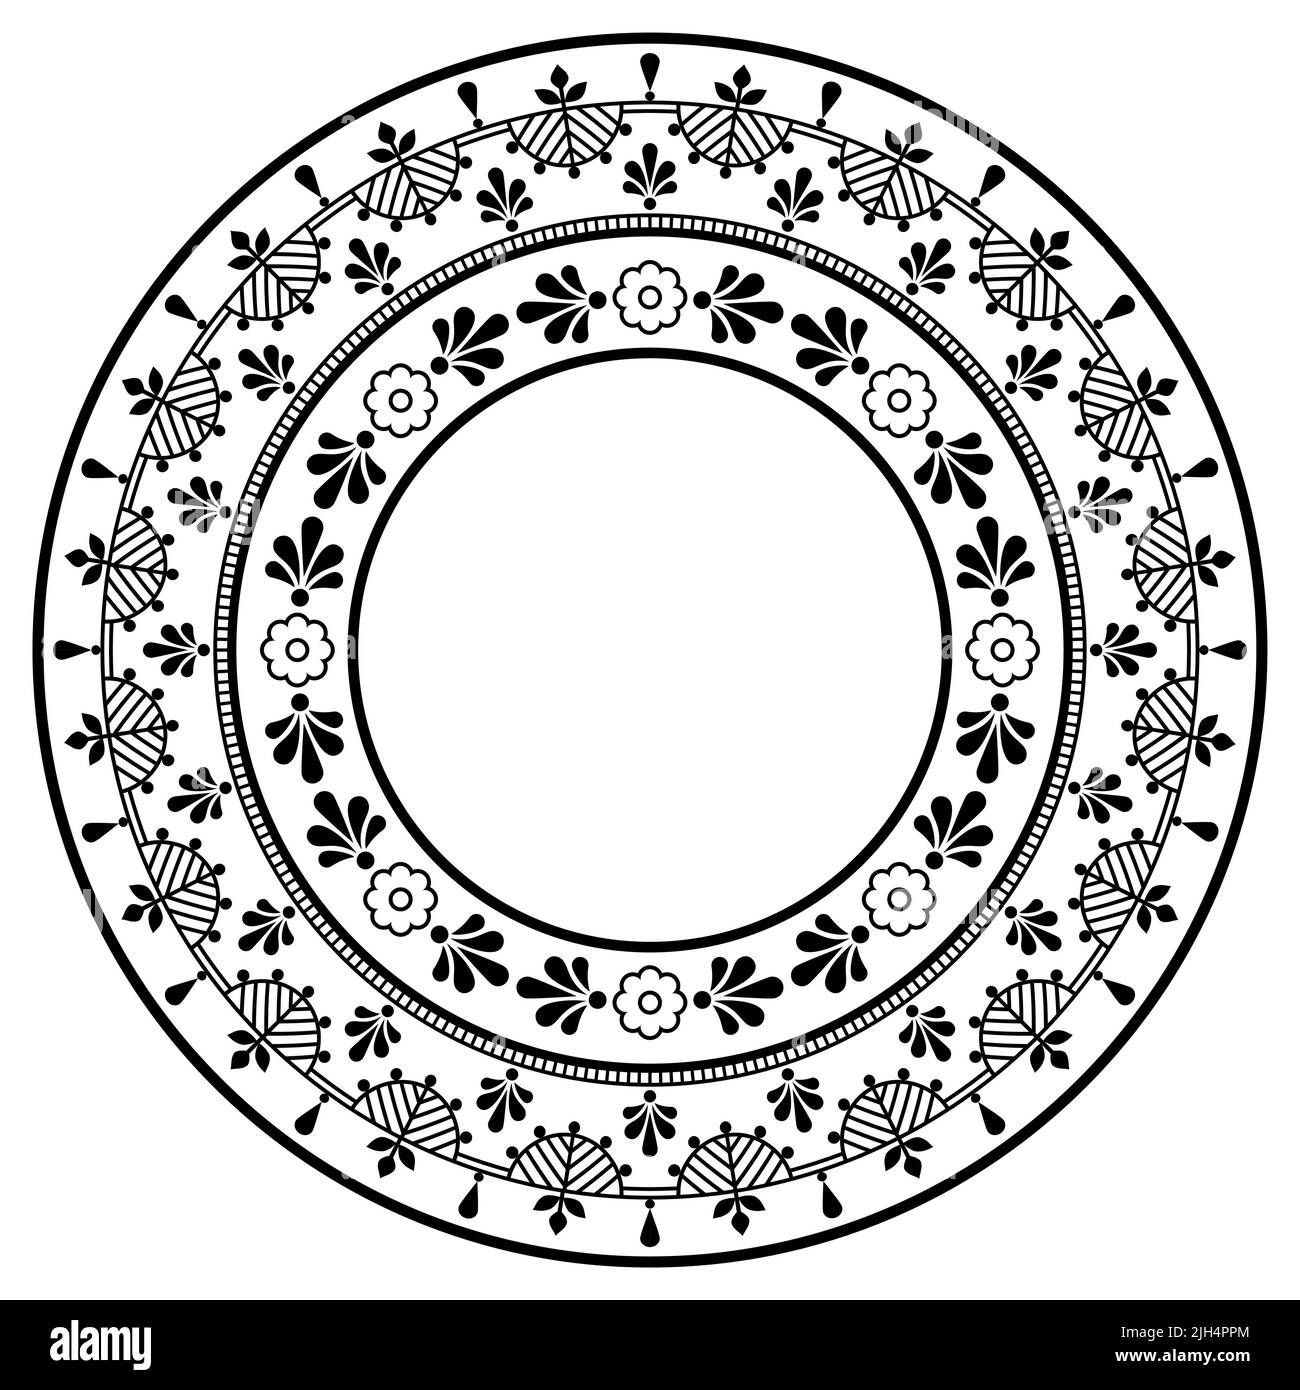 Motif scandinave en forme de mandala avec fleurs, carte de vœux ou invitation de mariage motif floral rond inspiré de l'art populaire nordique en noir A. Illustration de Vecteur